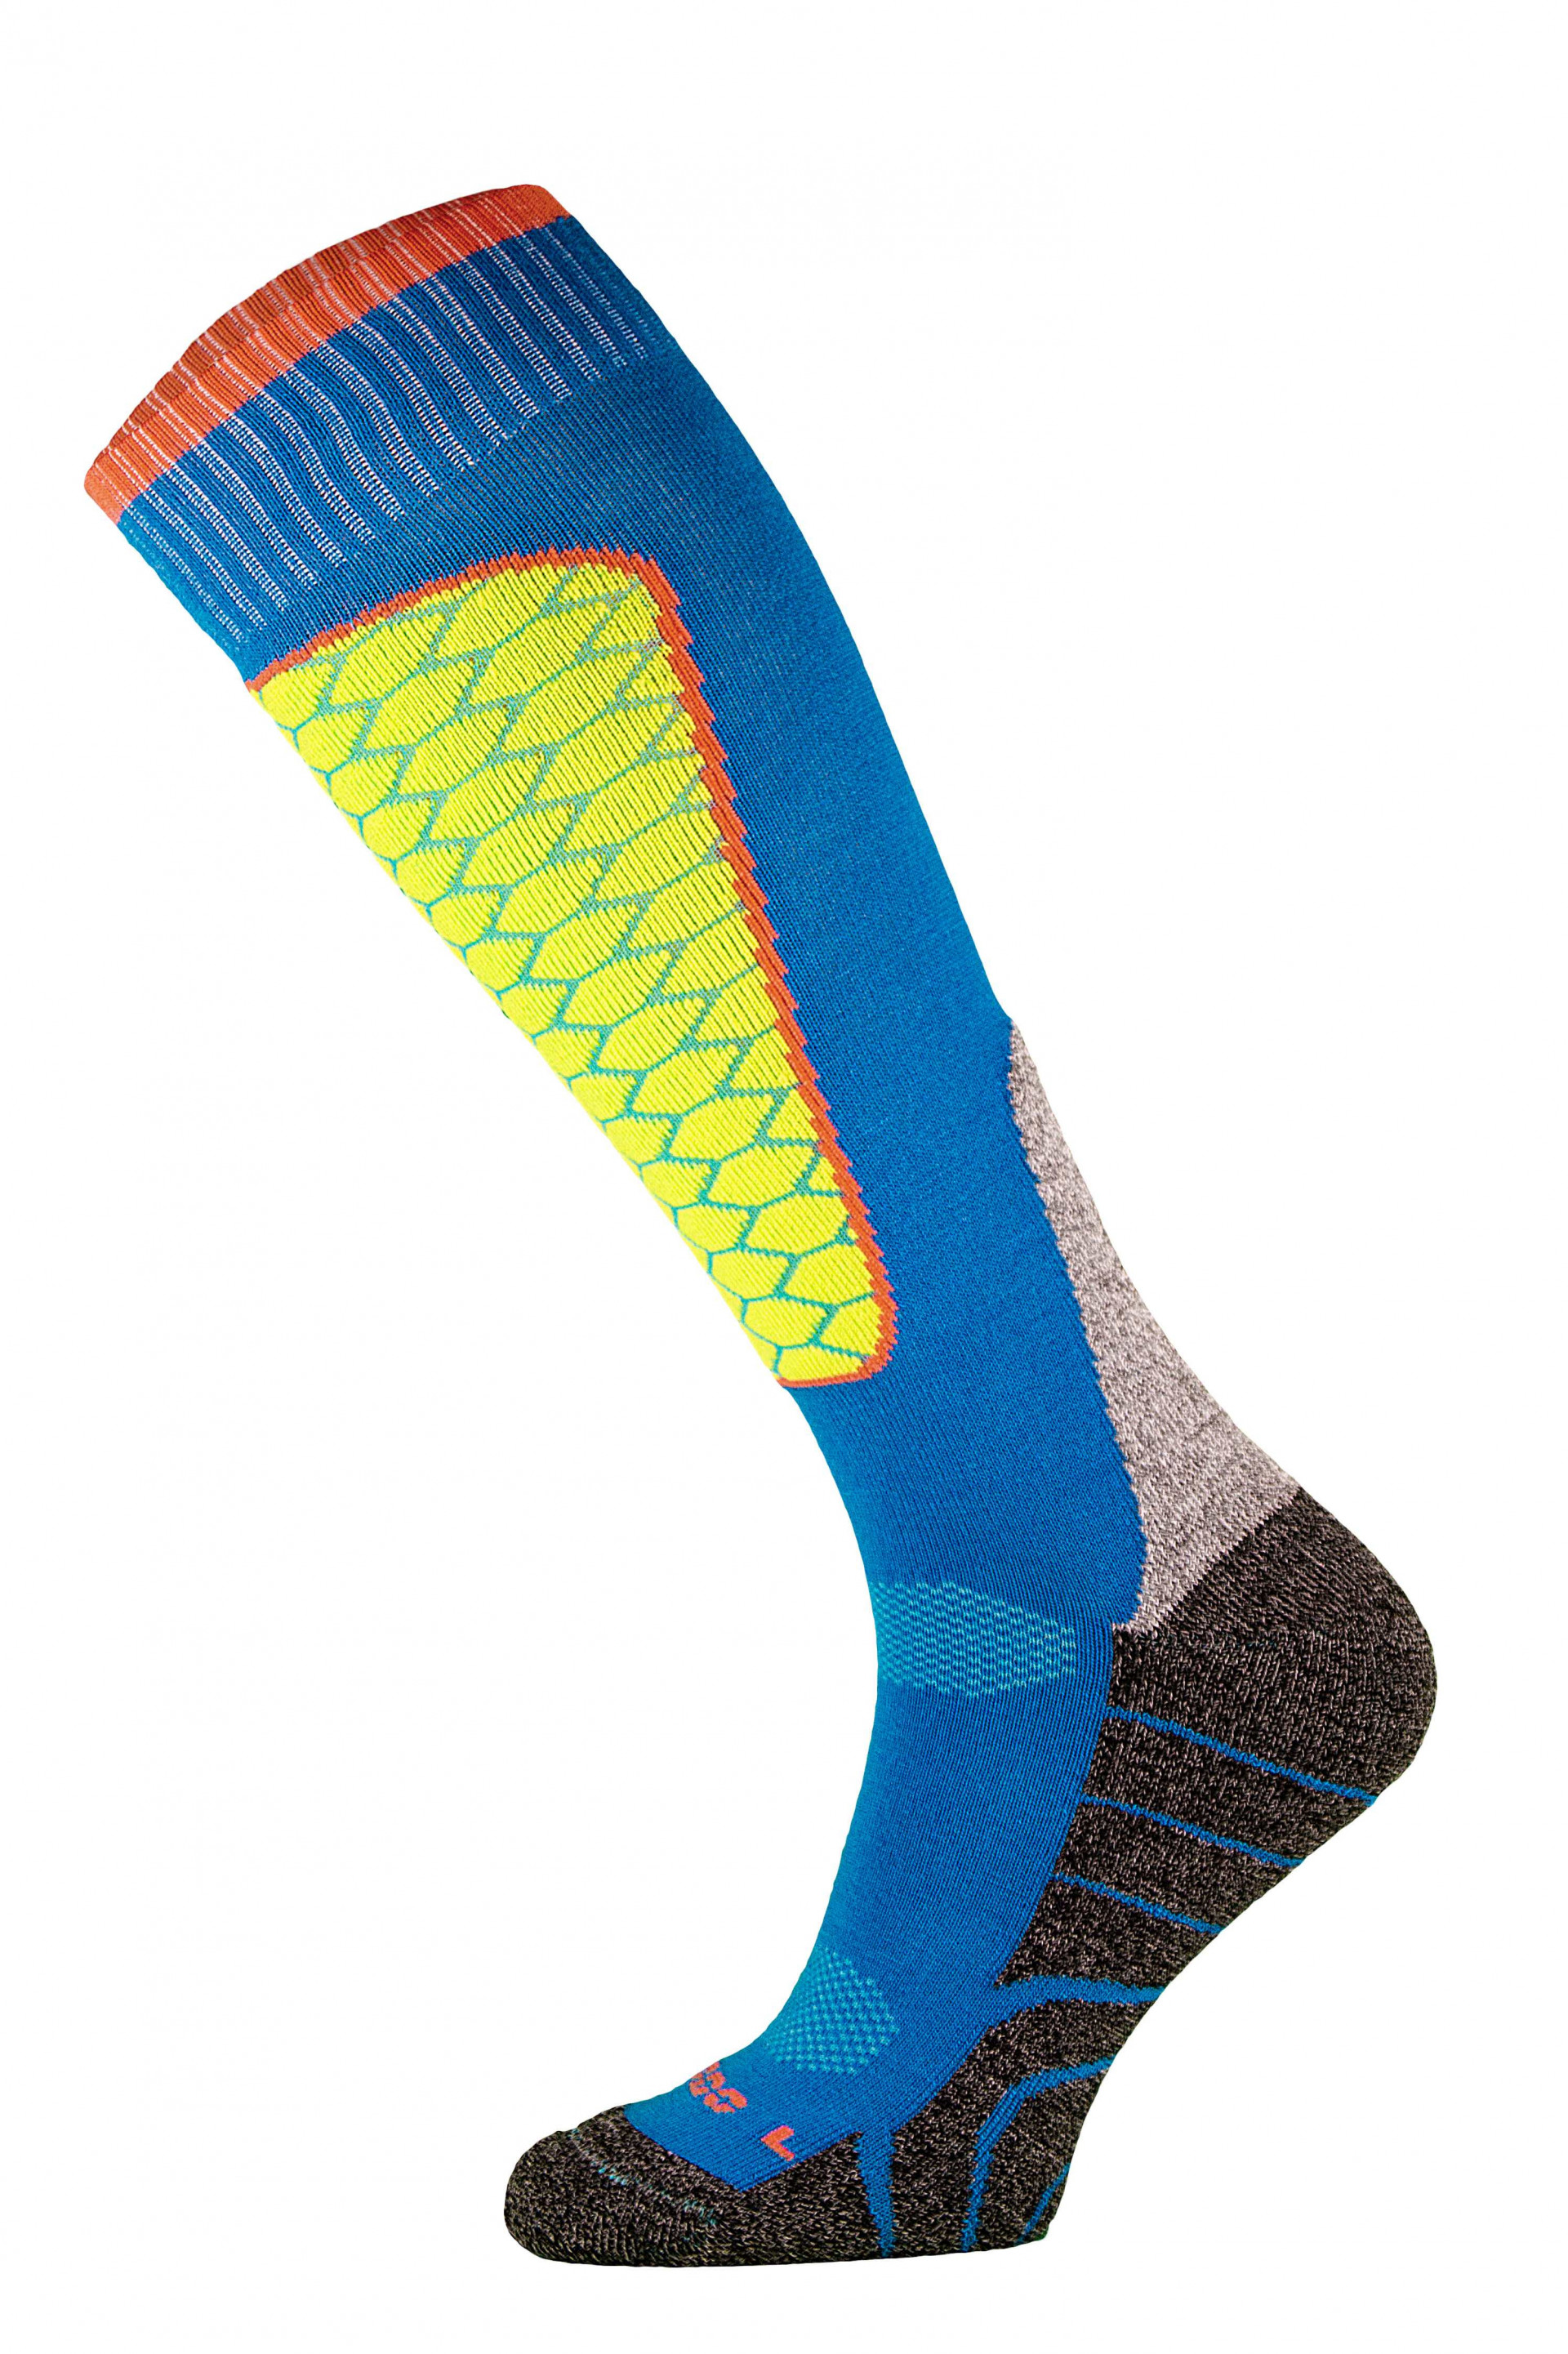 Chaussettes de ski et sports d'hiver de haute qualité par Comodo Sock (Plusieurs coloris)